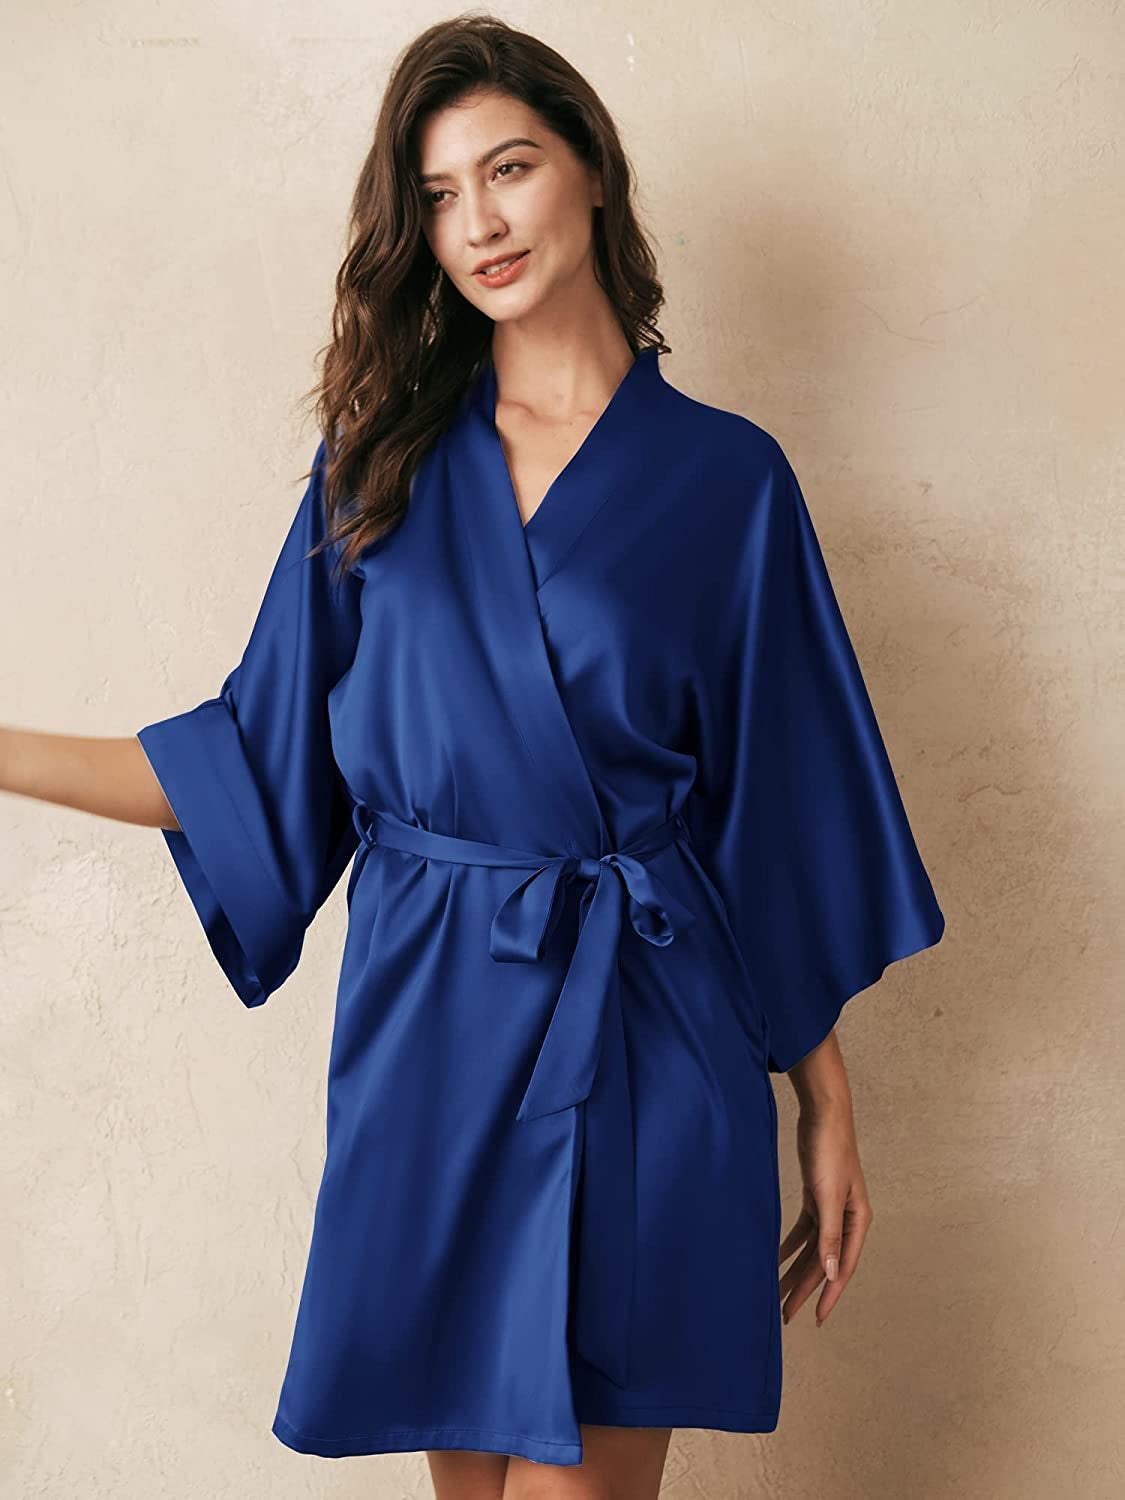 model in royal blue robe